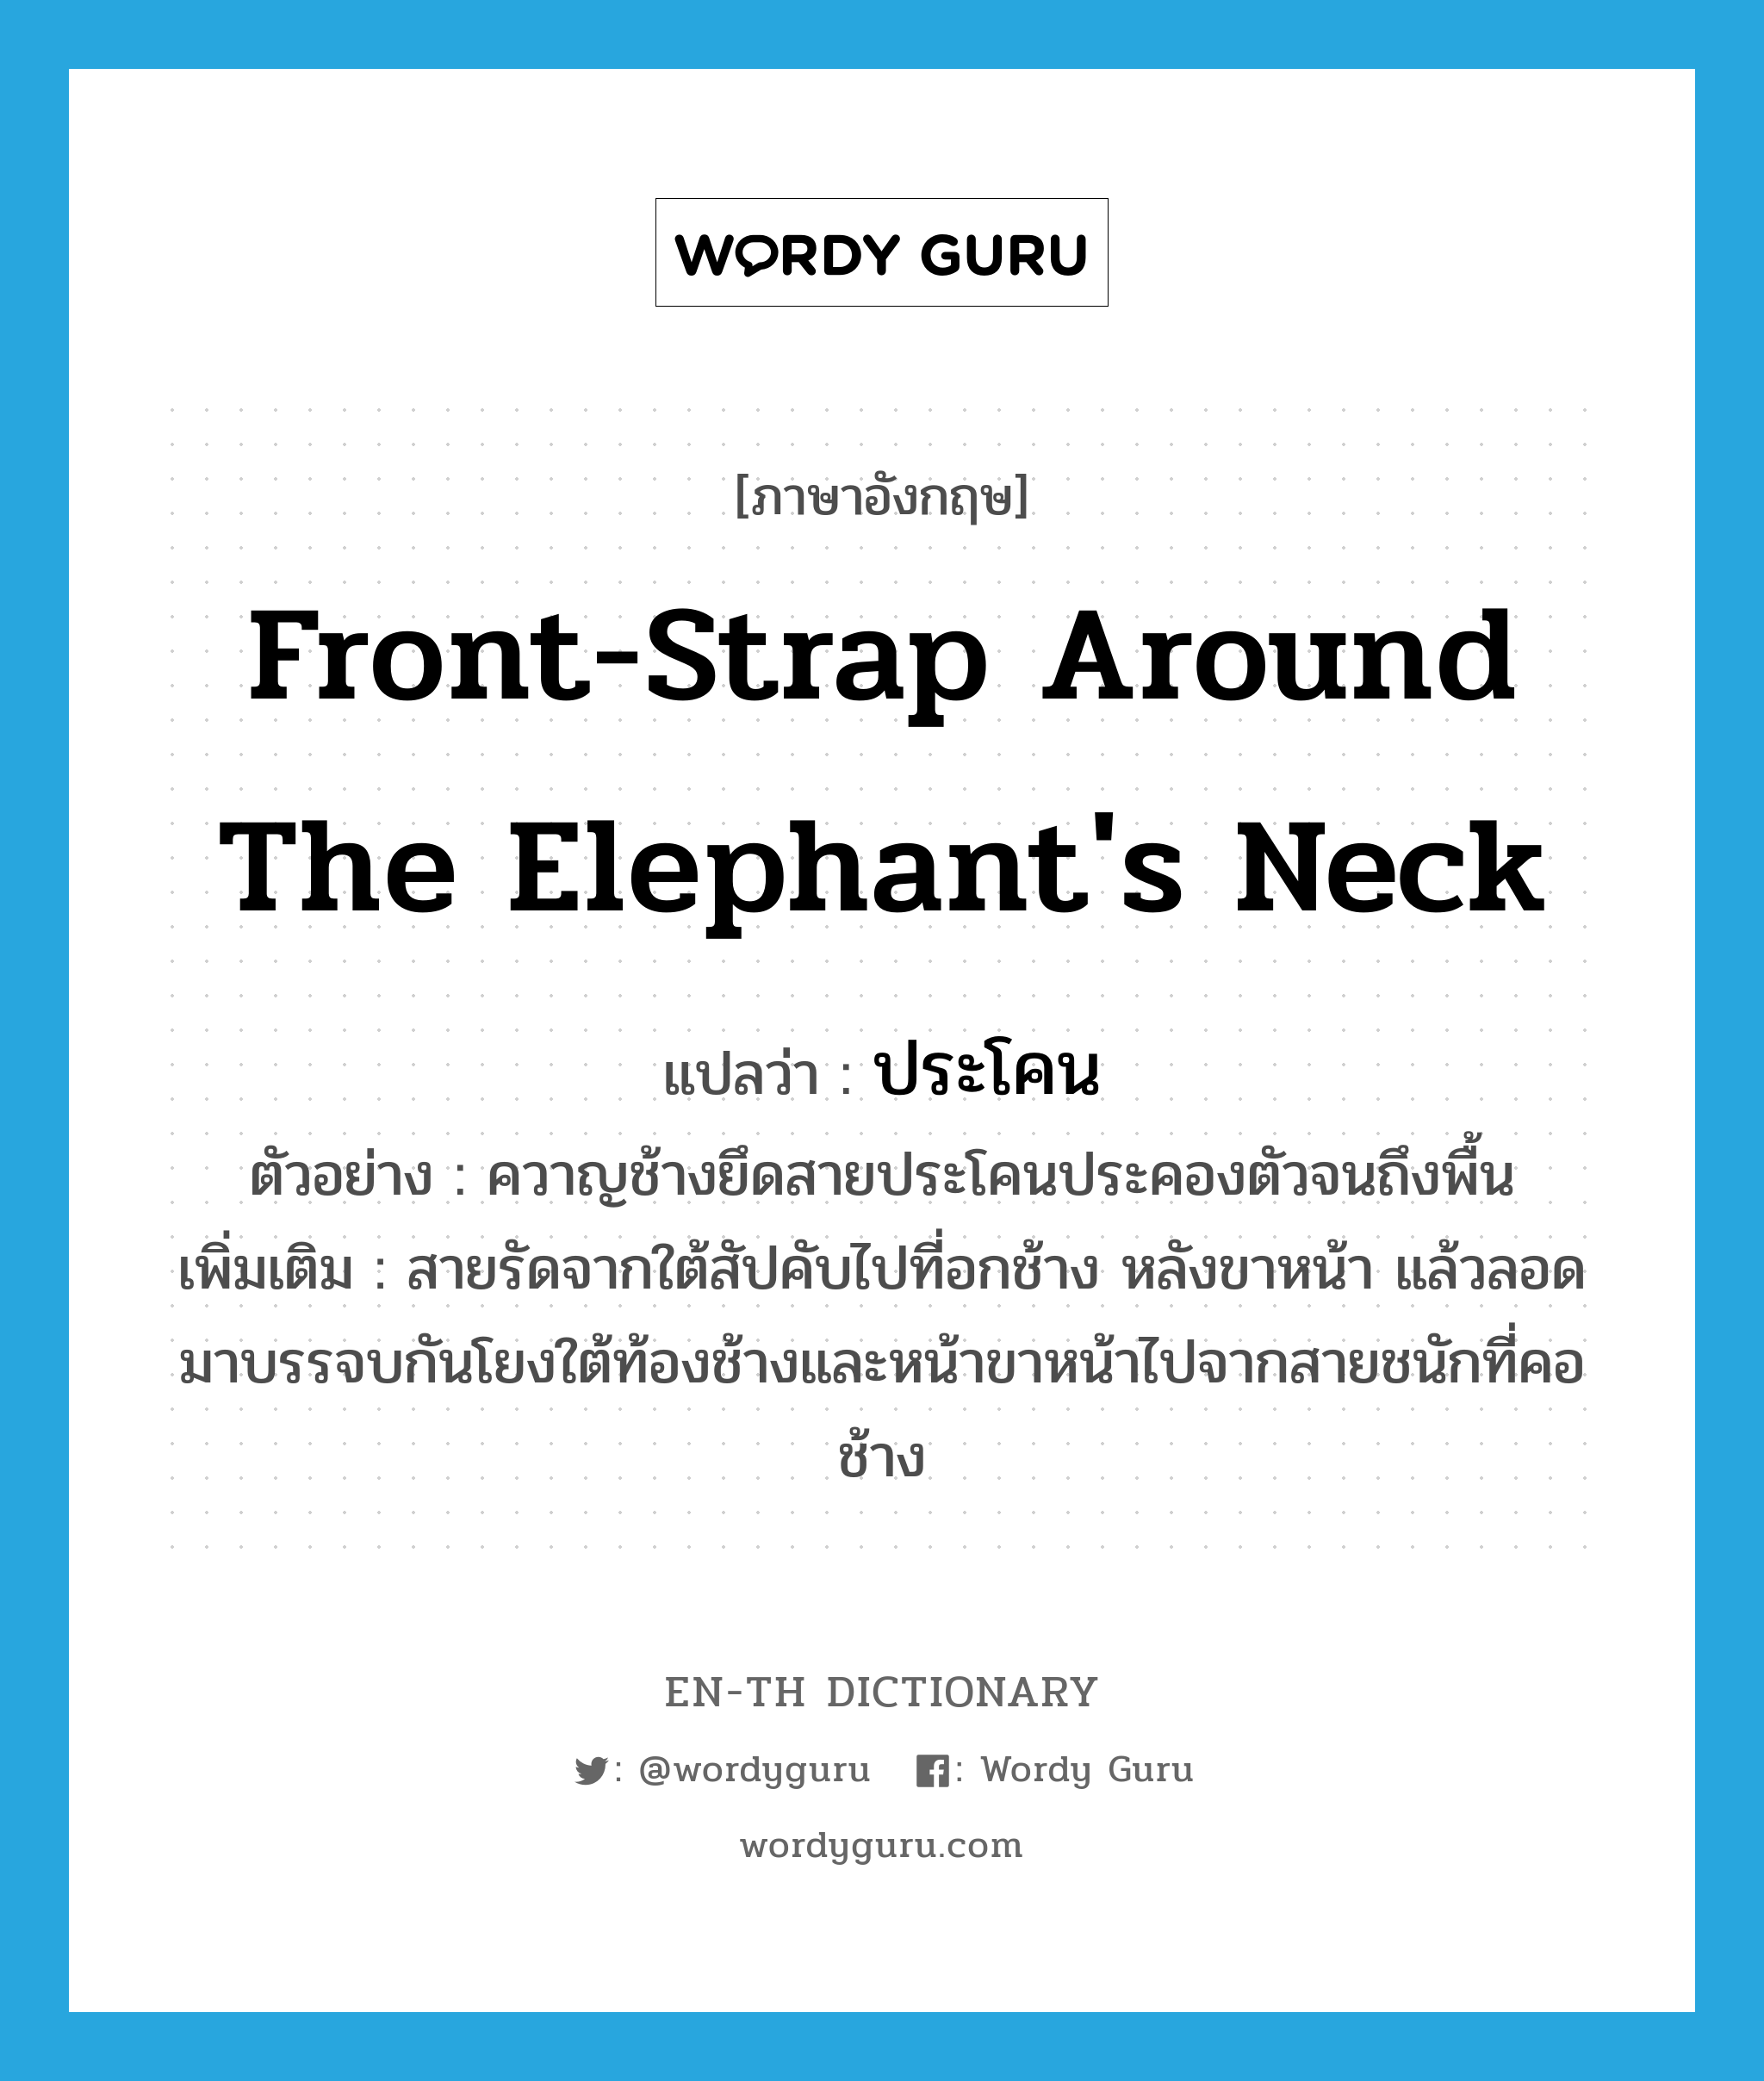 front-strap around the elephant's neck แปลว่า?, คำศัพท์ภาษาอังกฤษ front-strap around the elephant's neck แปลว่า ประโคน ประเภท N ตัวอย่าง ควาญช้างยึดสายประโคนประคองตัวจนถึงพื้น เพิ่มเติม สายรัดจากใต้สัปคับไปที่อกช้าง หลังขาหน้า แล้วลอดมาบรรจบกันโยงใต้ท้องช้างและหน้าขาหน้าไปจากสายชนักที่คอช้าง หมวด N